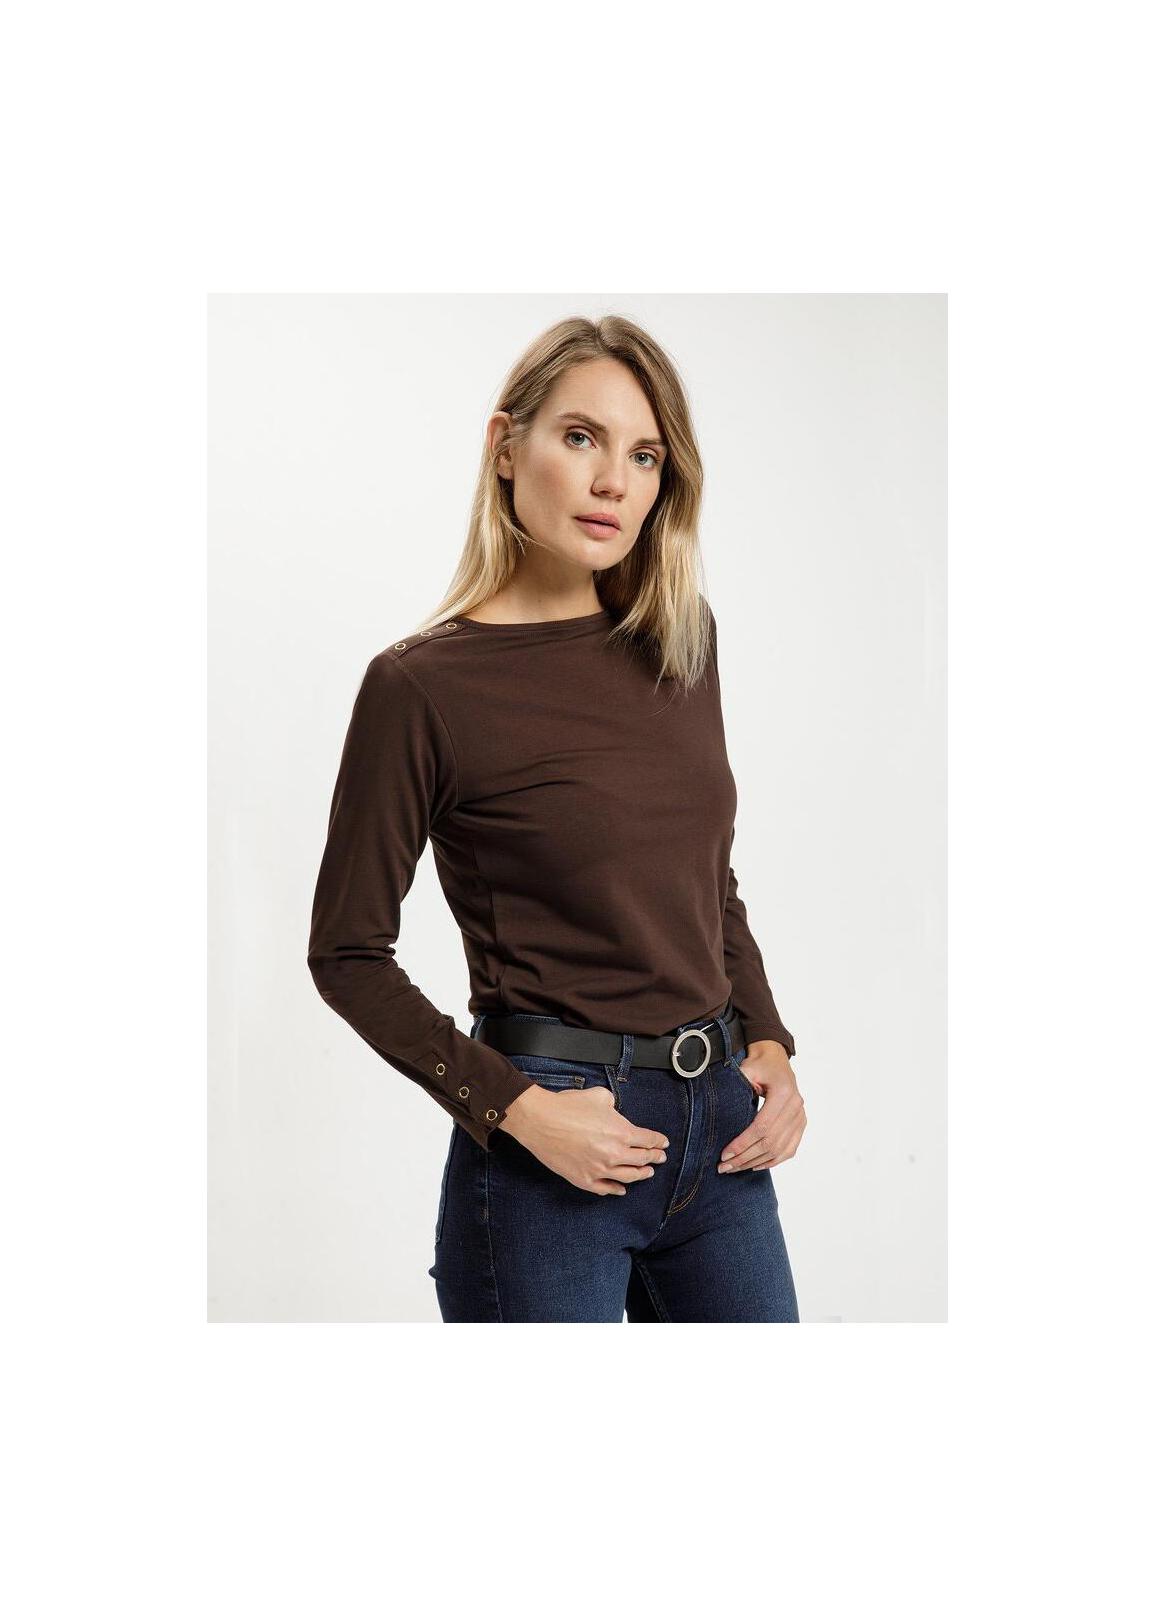 Cross Jeans® Long Sleeve Sweatshirt - Chestnut (103)